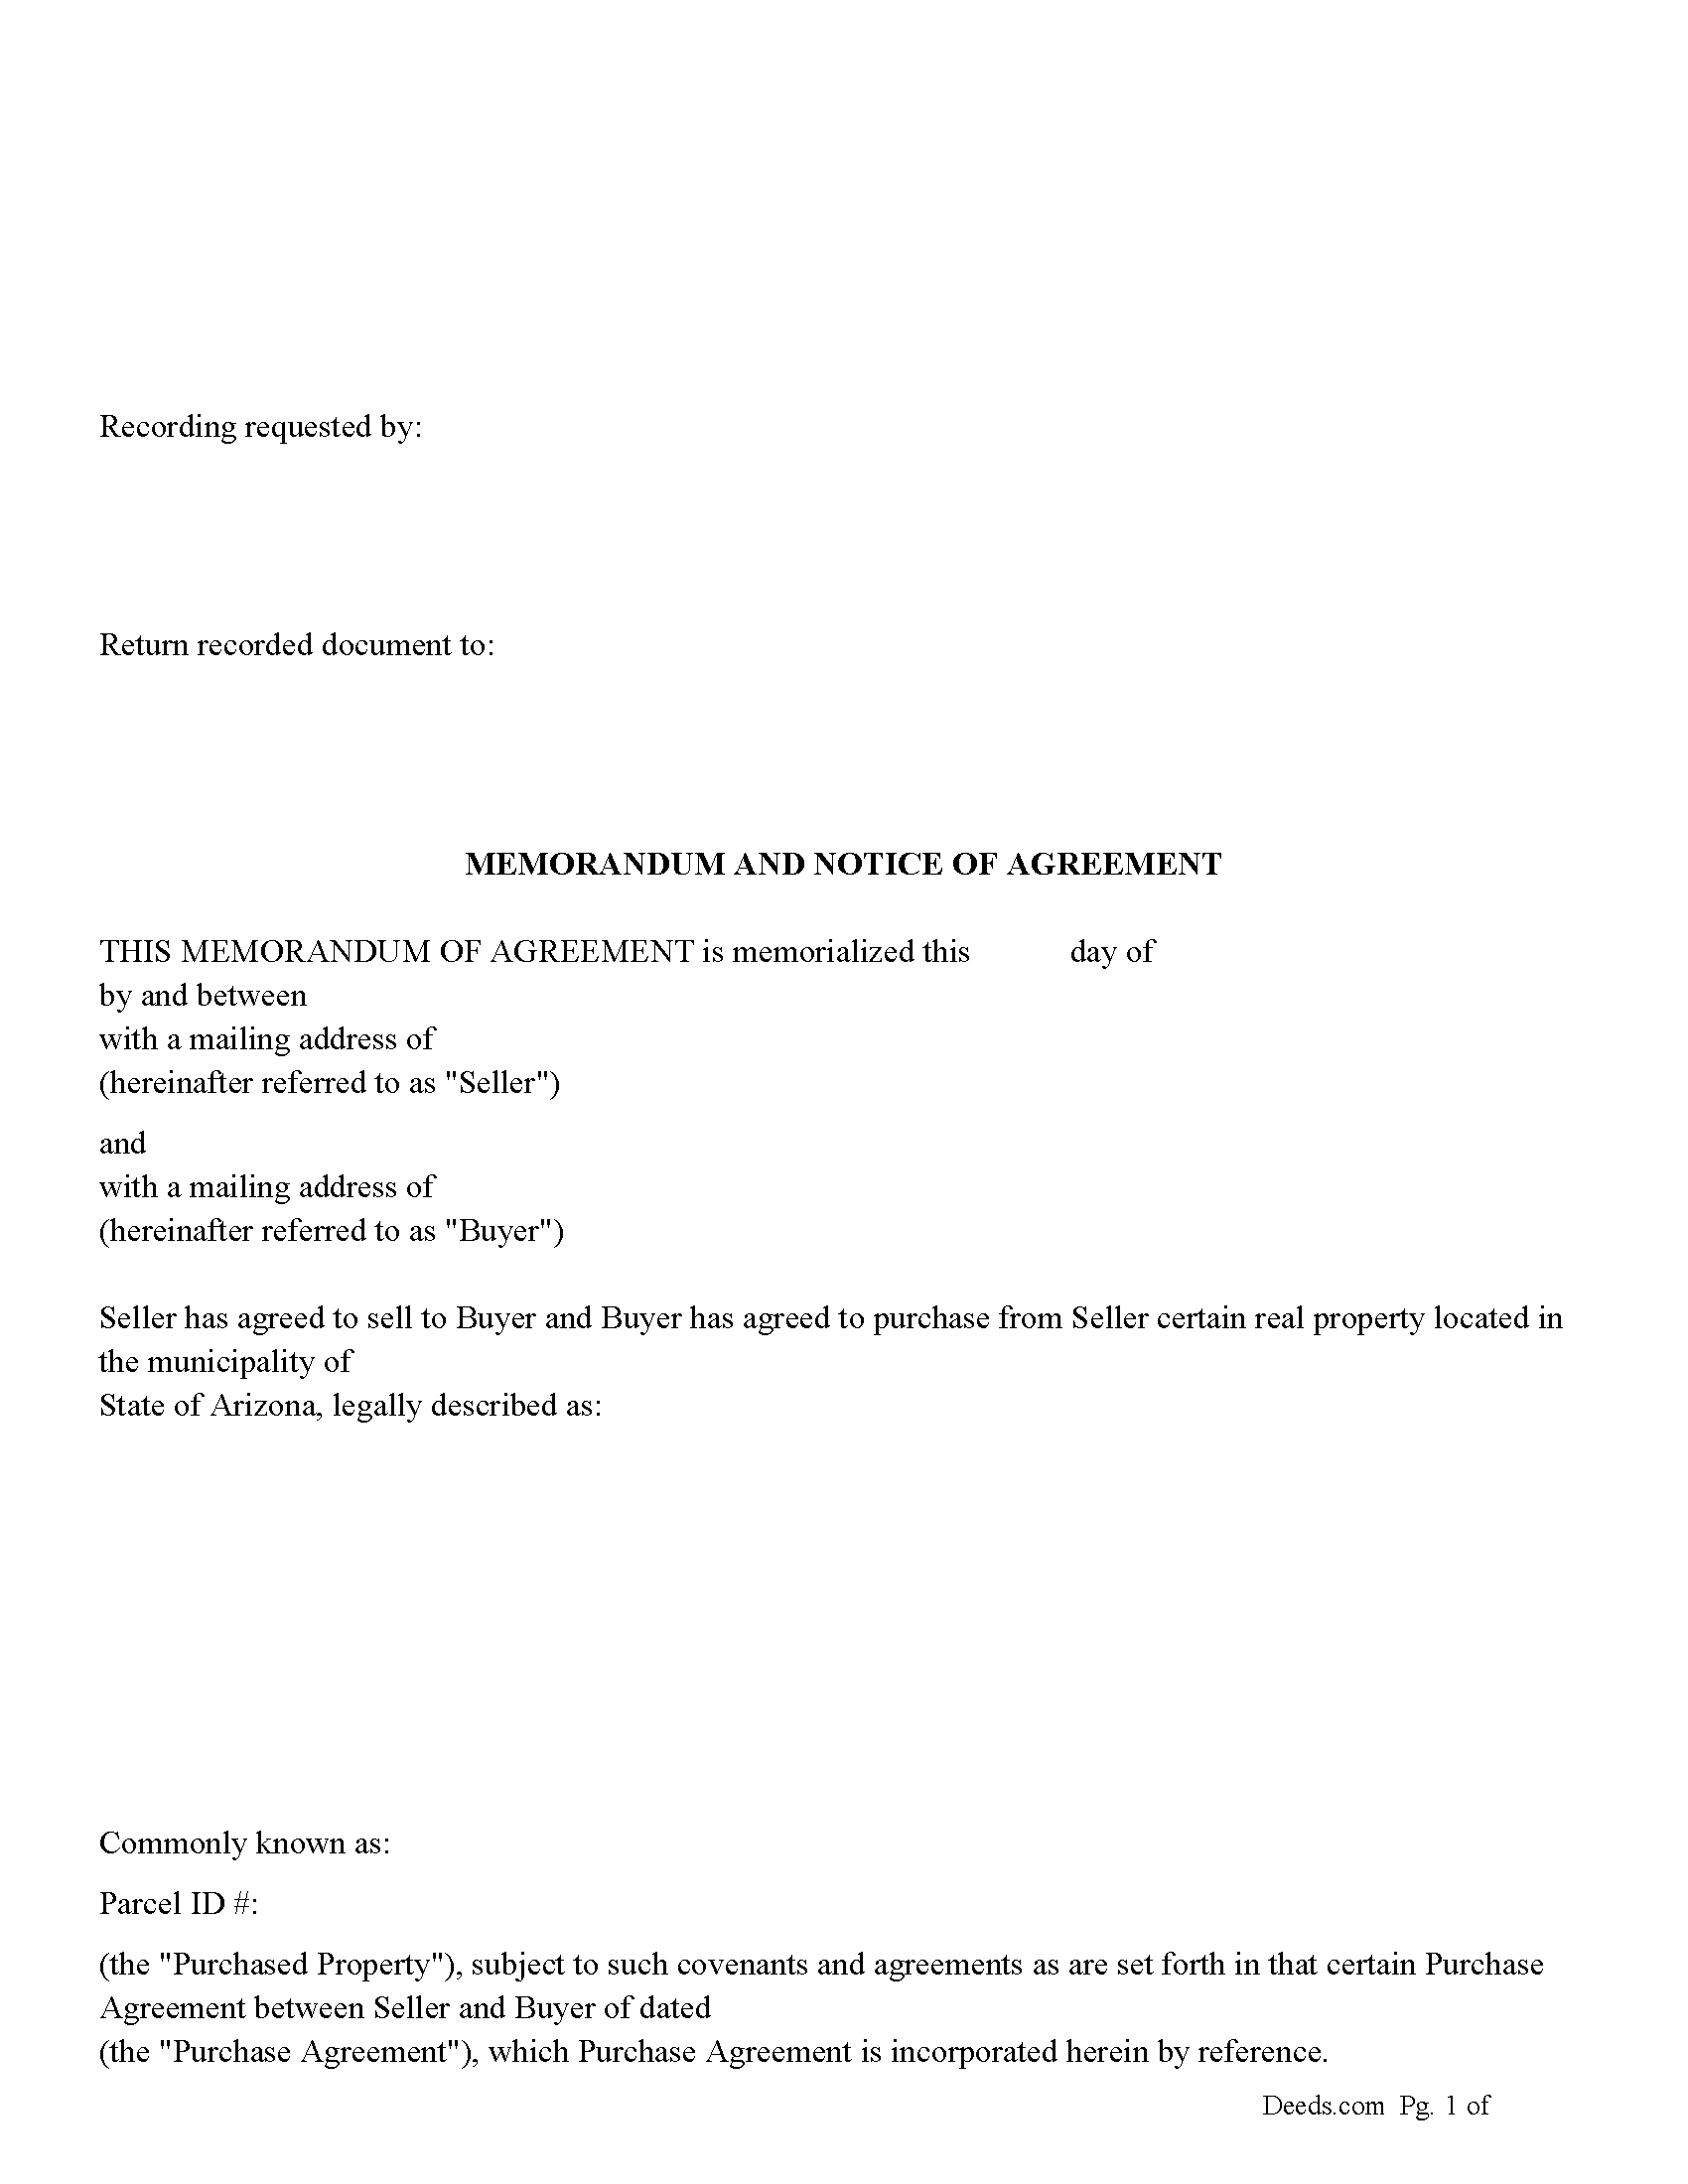 Memorandum and Notice of Agreement Form